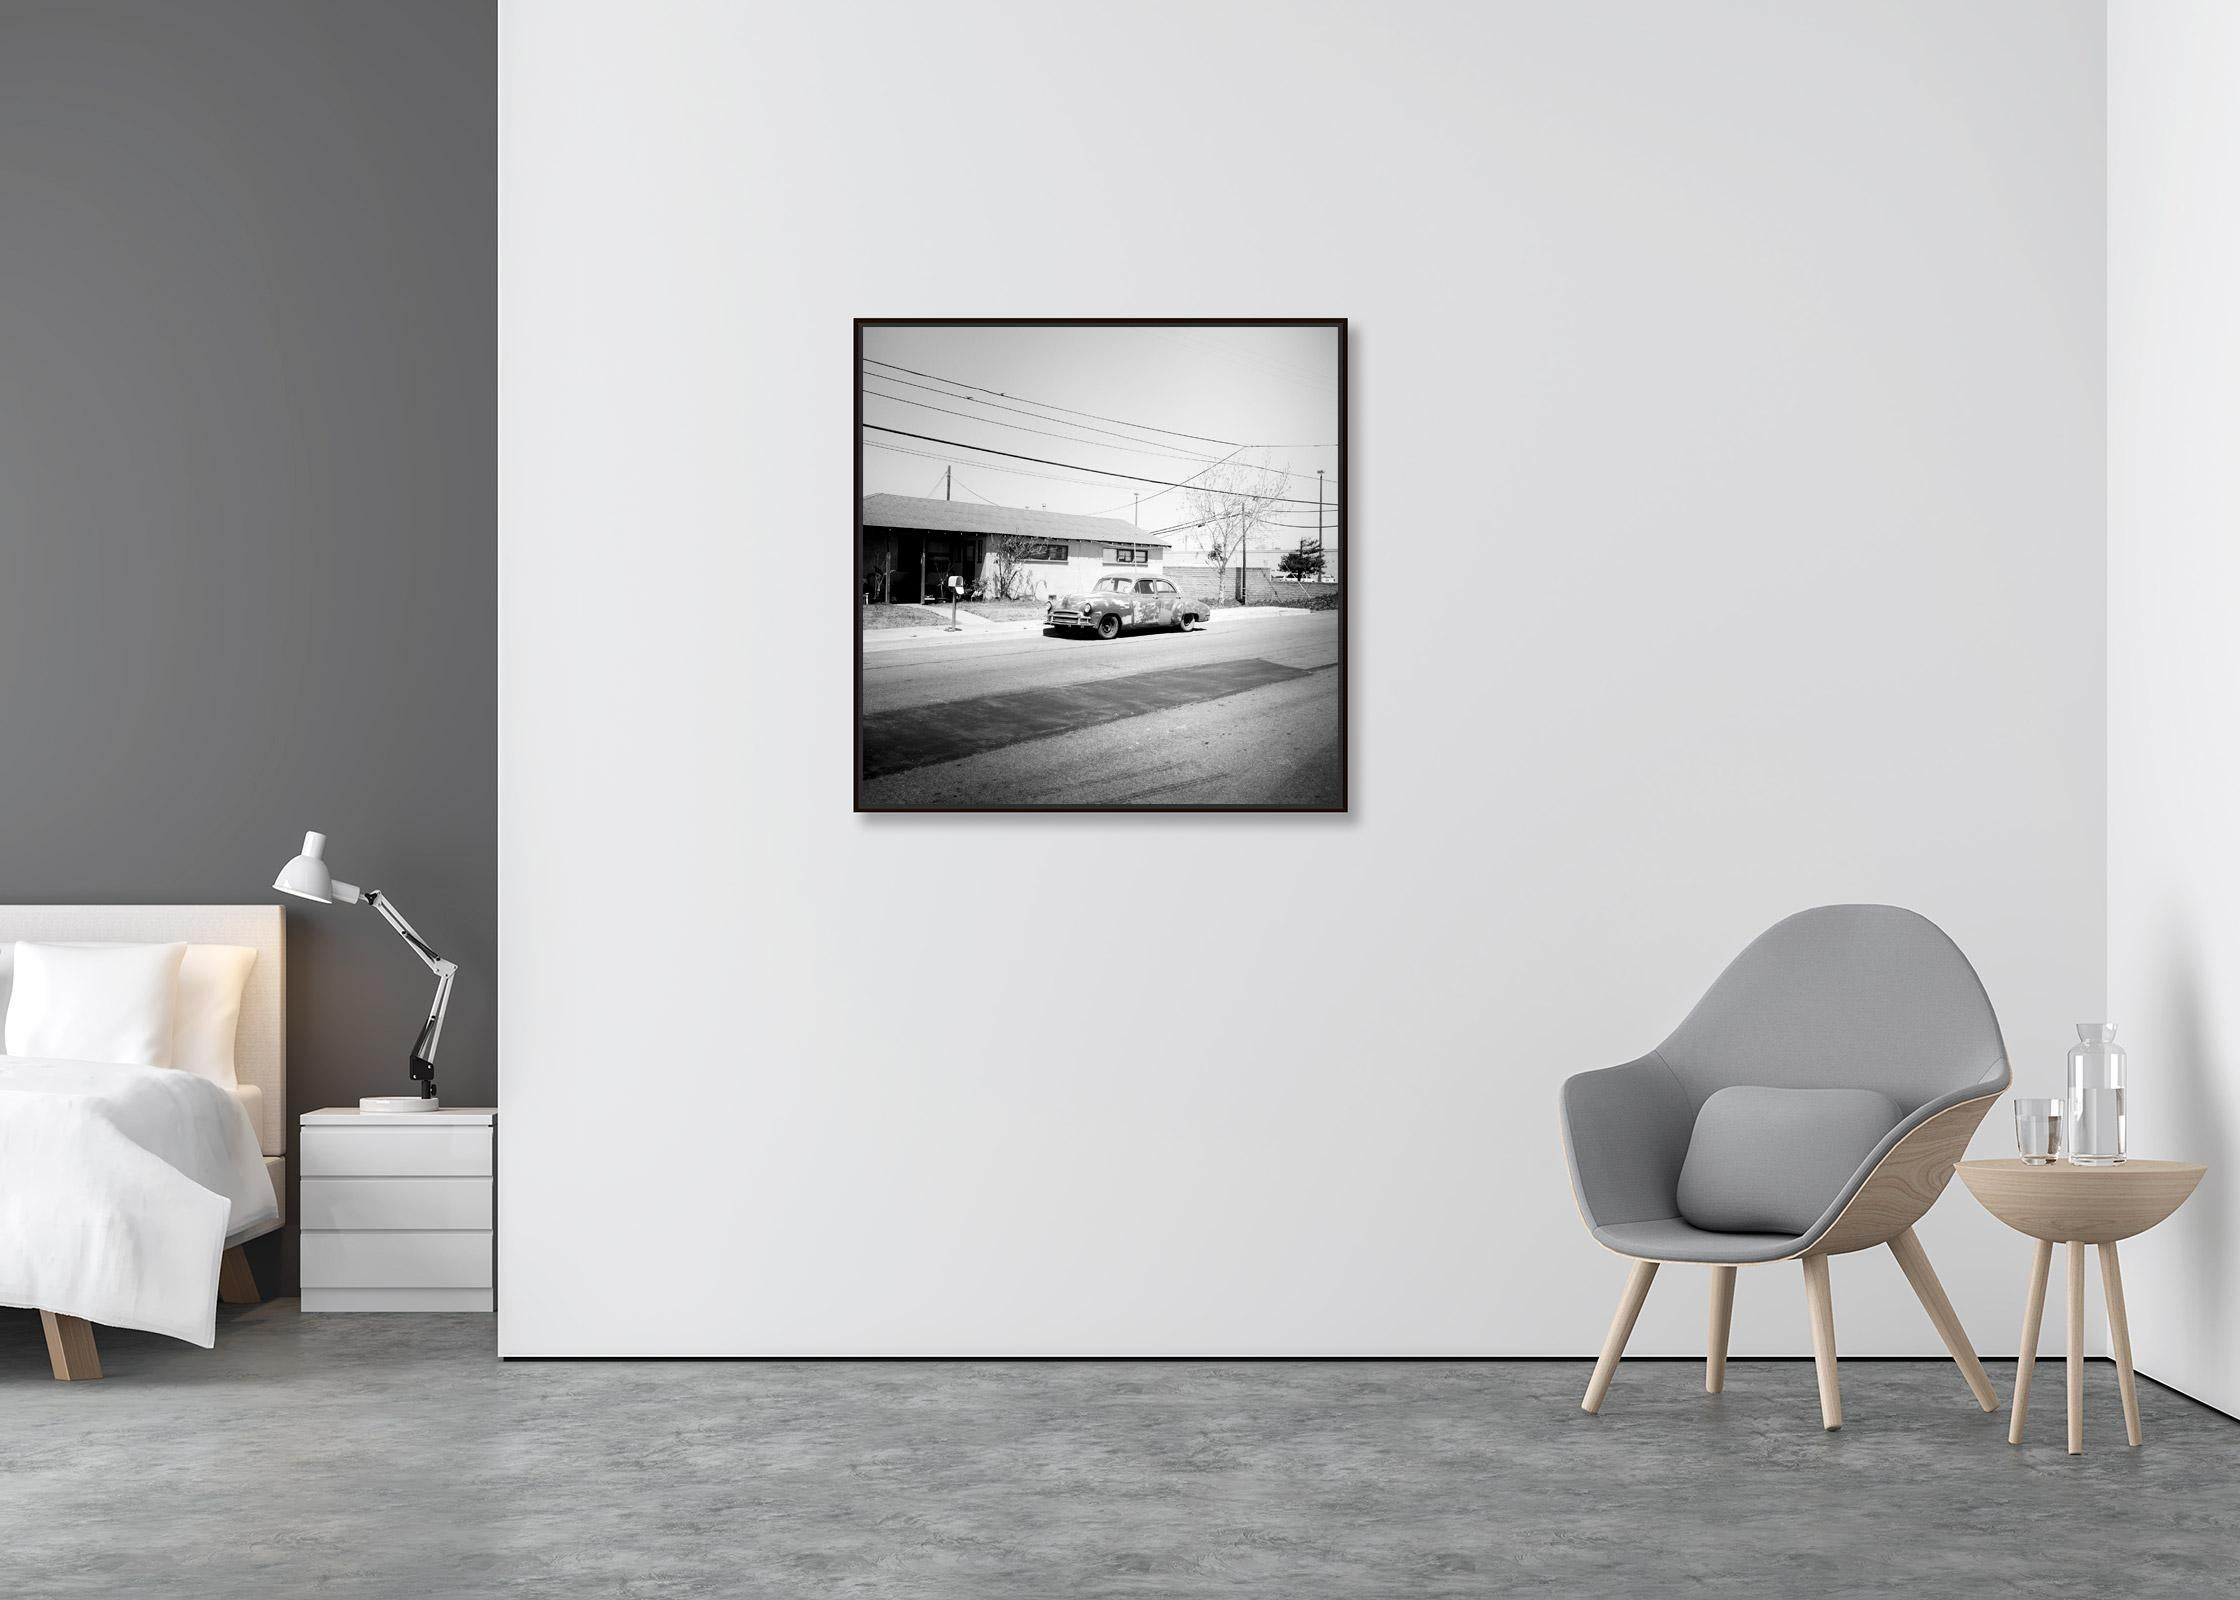 Haus, Classic Car, Arizona, USA, Schwarz-Weiß-Landschaftsfotografie-Kunstdruck (Zeitgenössisch), Photograph, von Gerald Berghammer